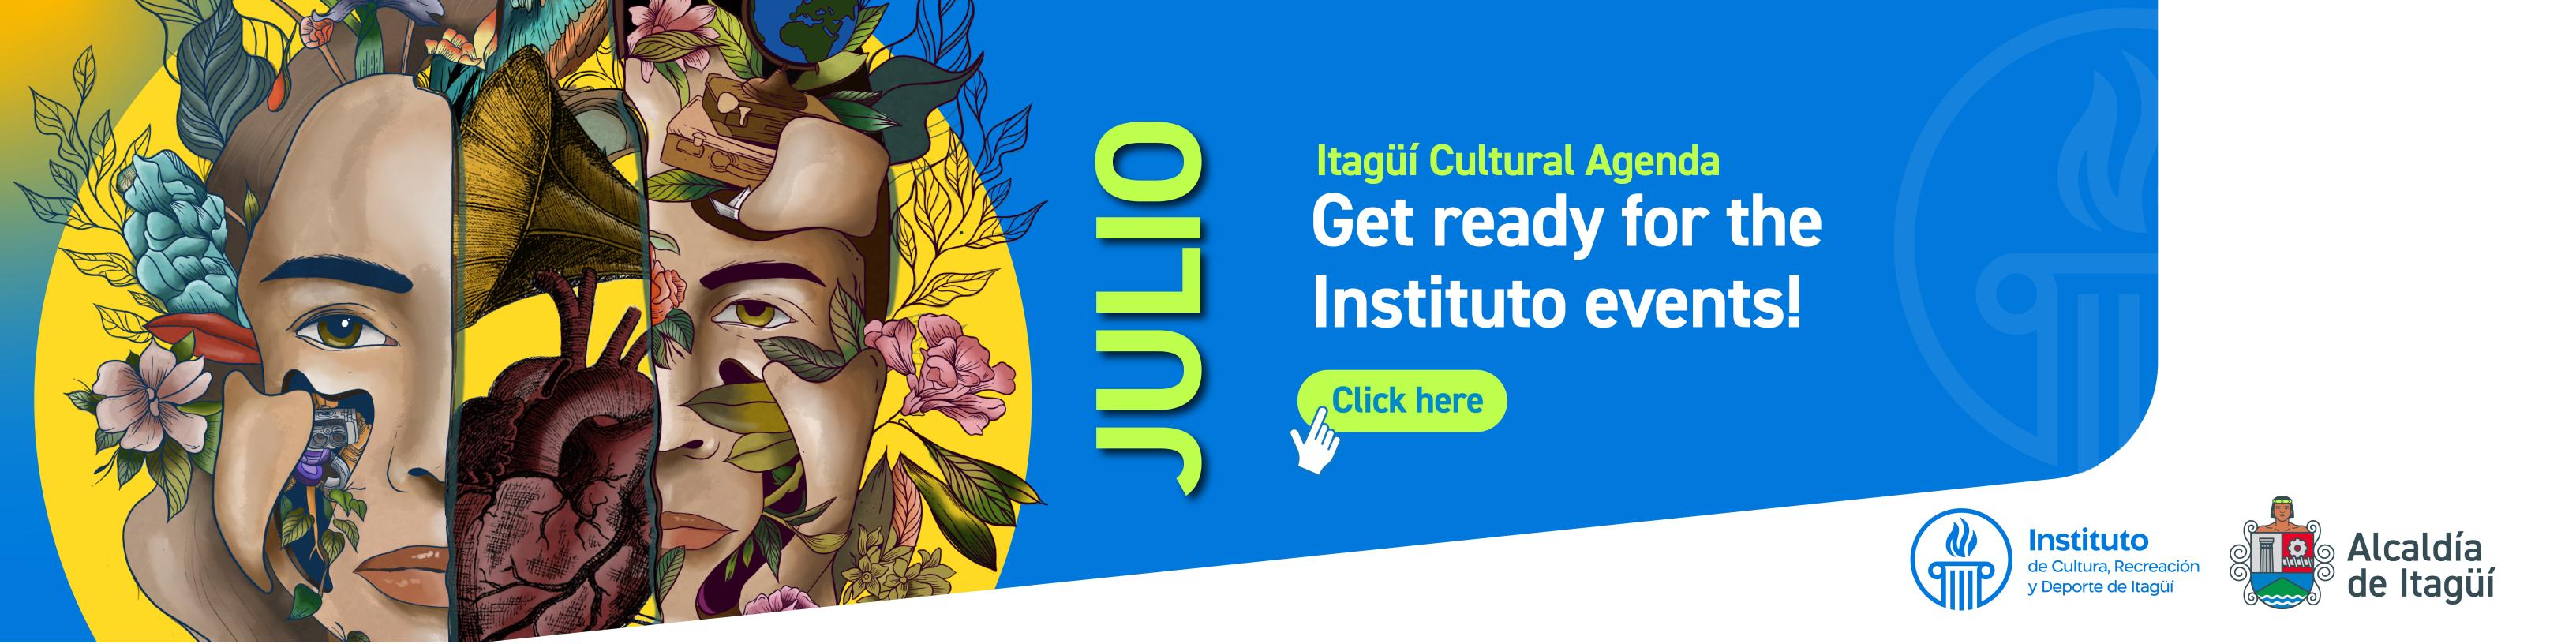 Itagüí Cultural Agenda julio